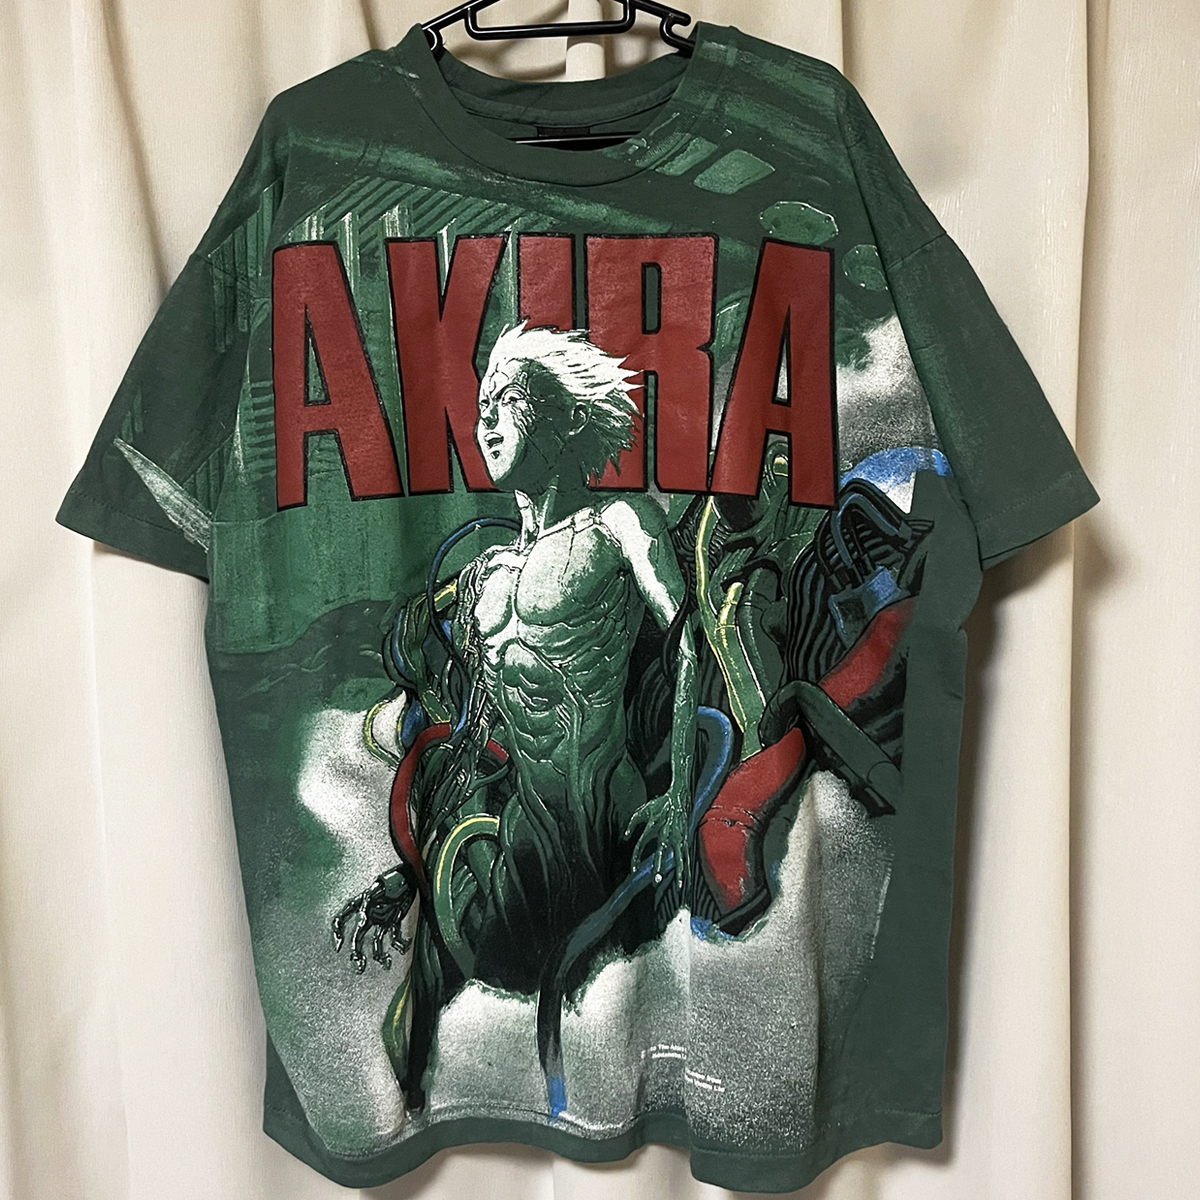 Yahoo!オークション -「akira 大友克洋 tシャツ」(Tシャツ) (メンズ 